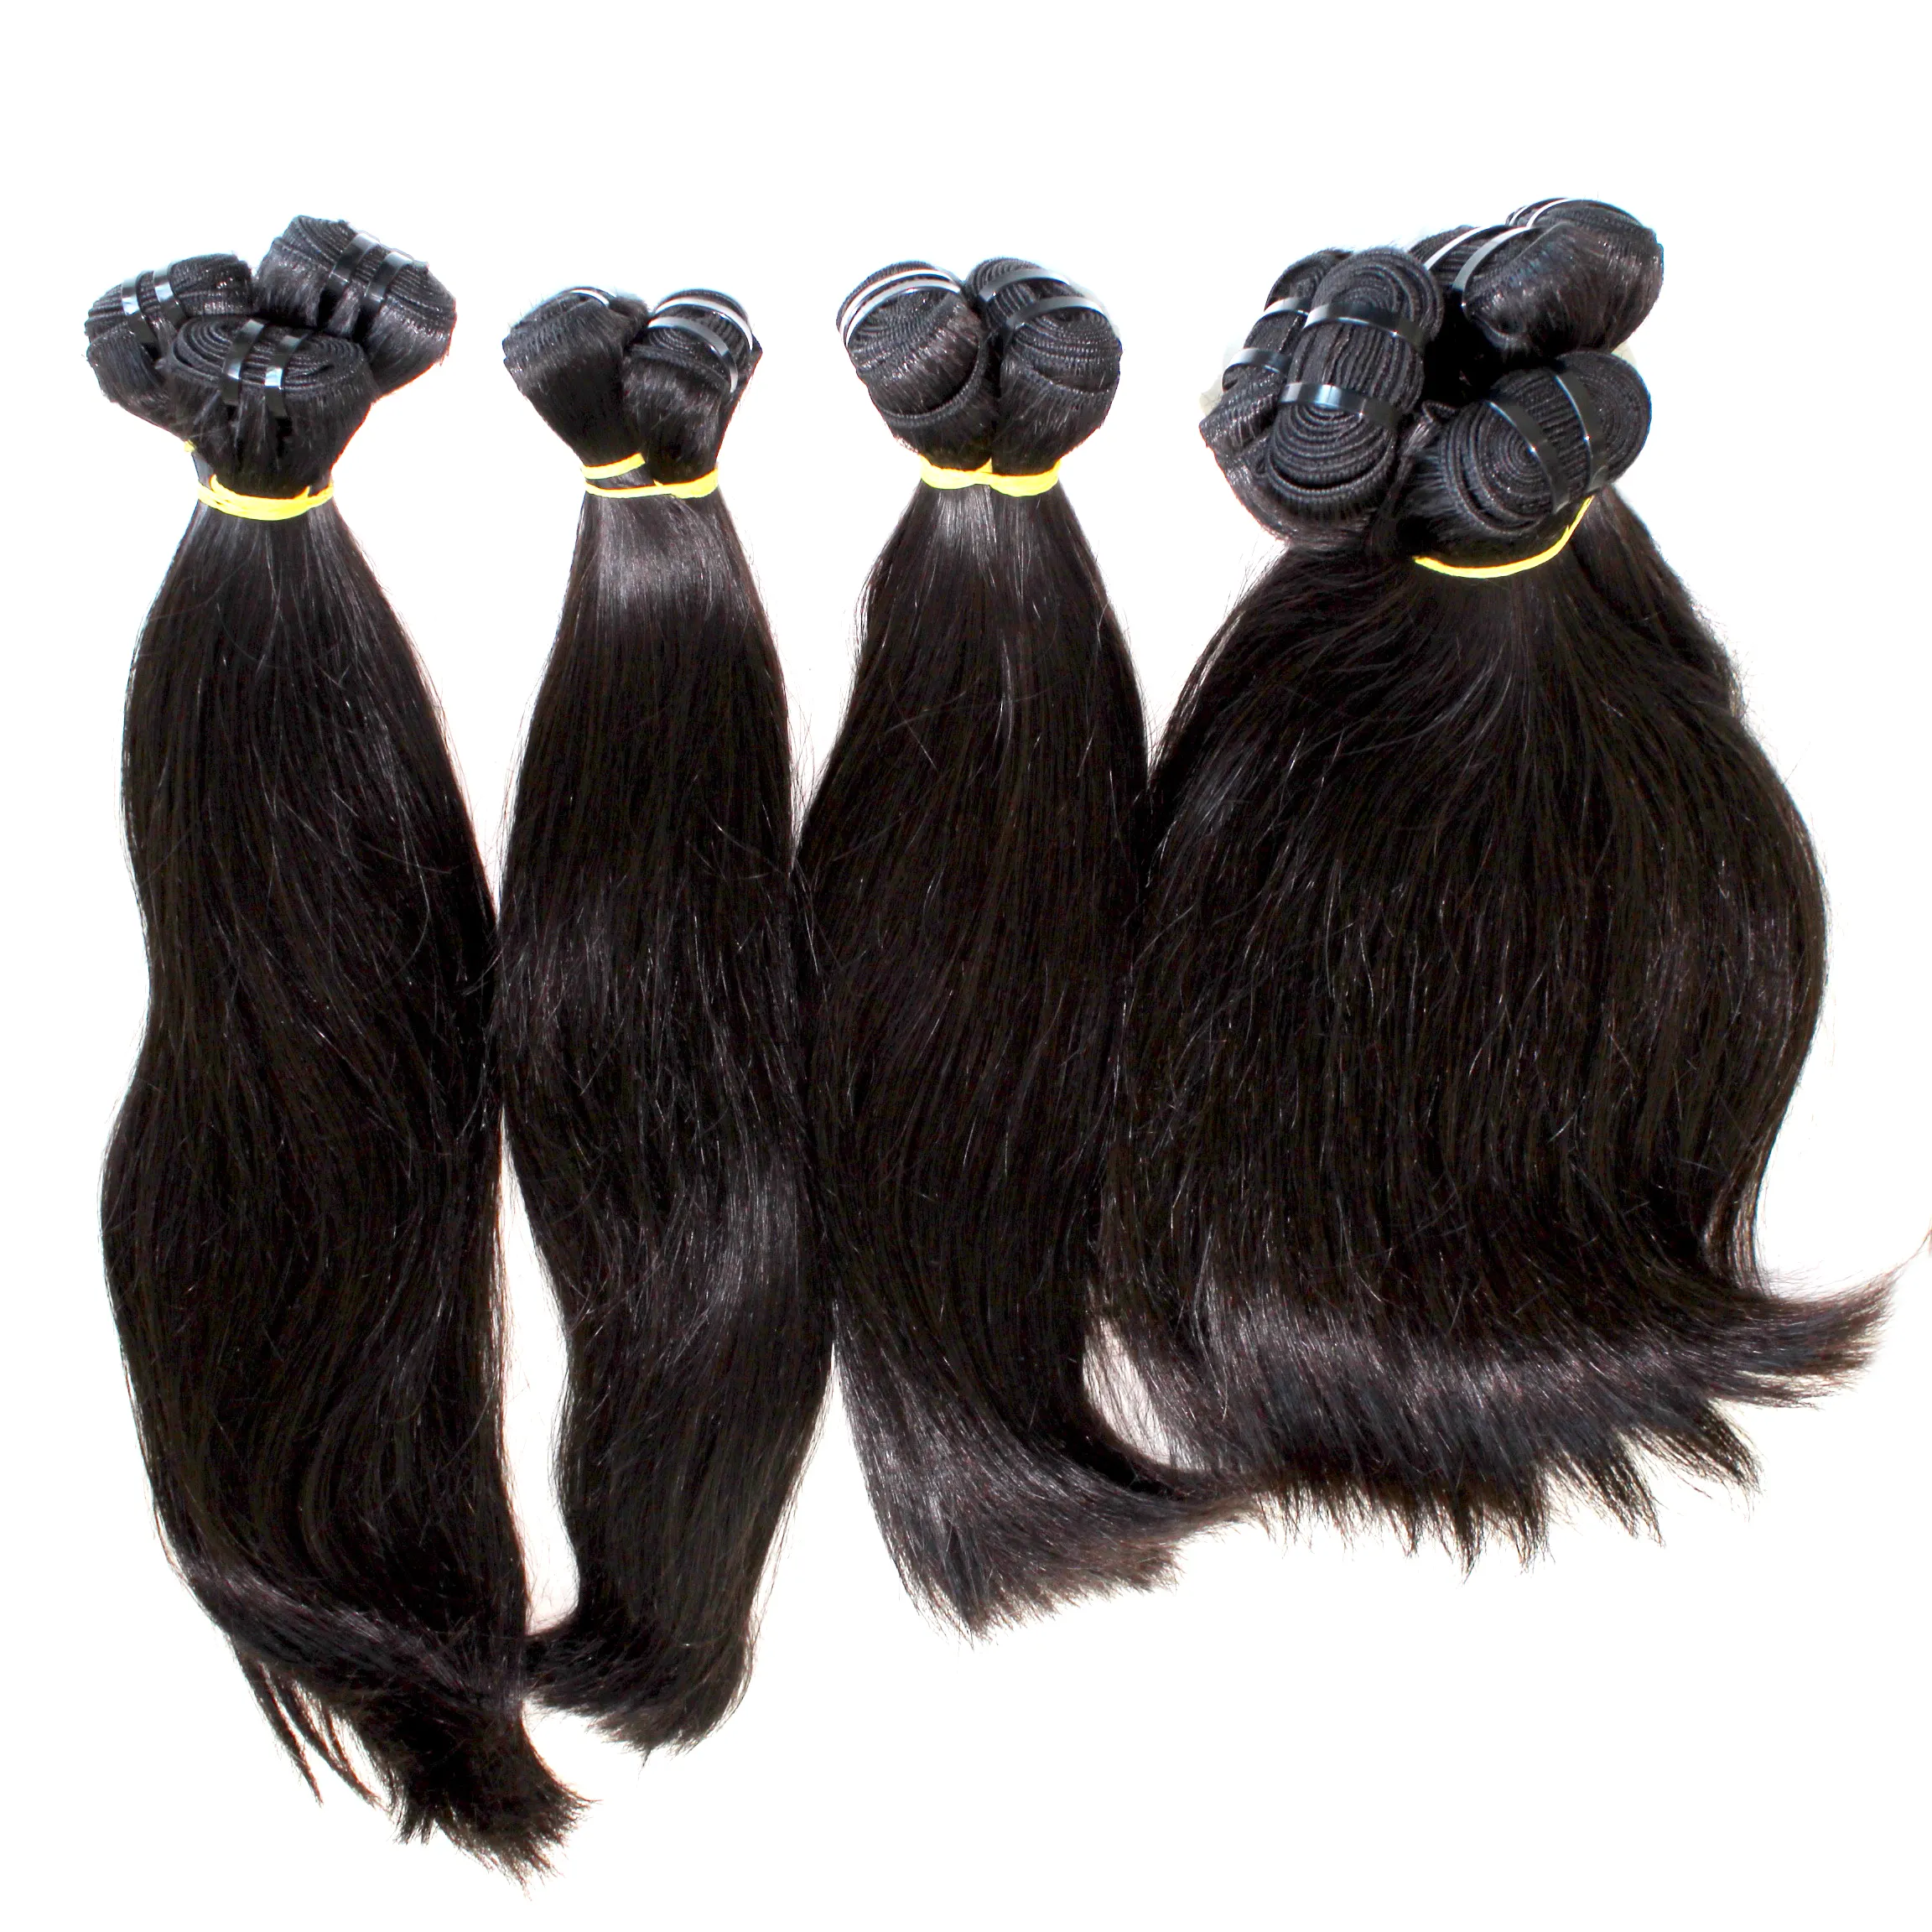 Hair Extensions Hair Bulk, Groothandel Hair Extensions Vietnam Best Verkopende Bulkvoorraden, 10a Nerts Maagdelijke Haarverkoper